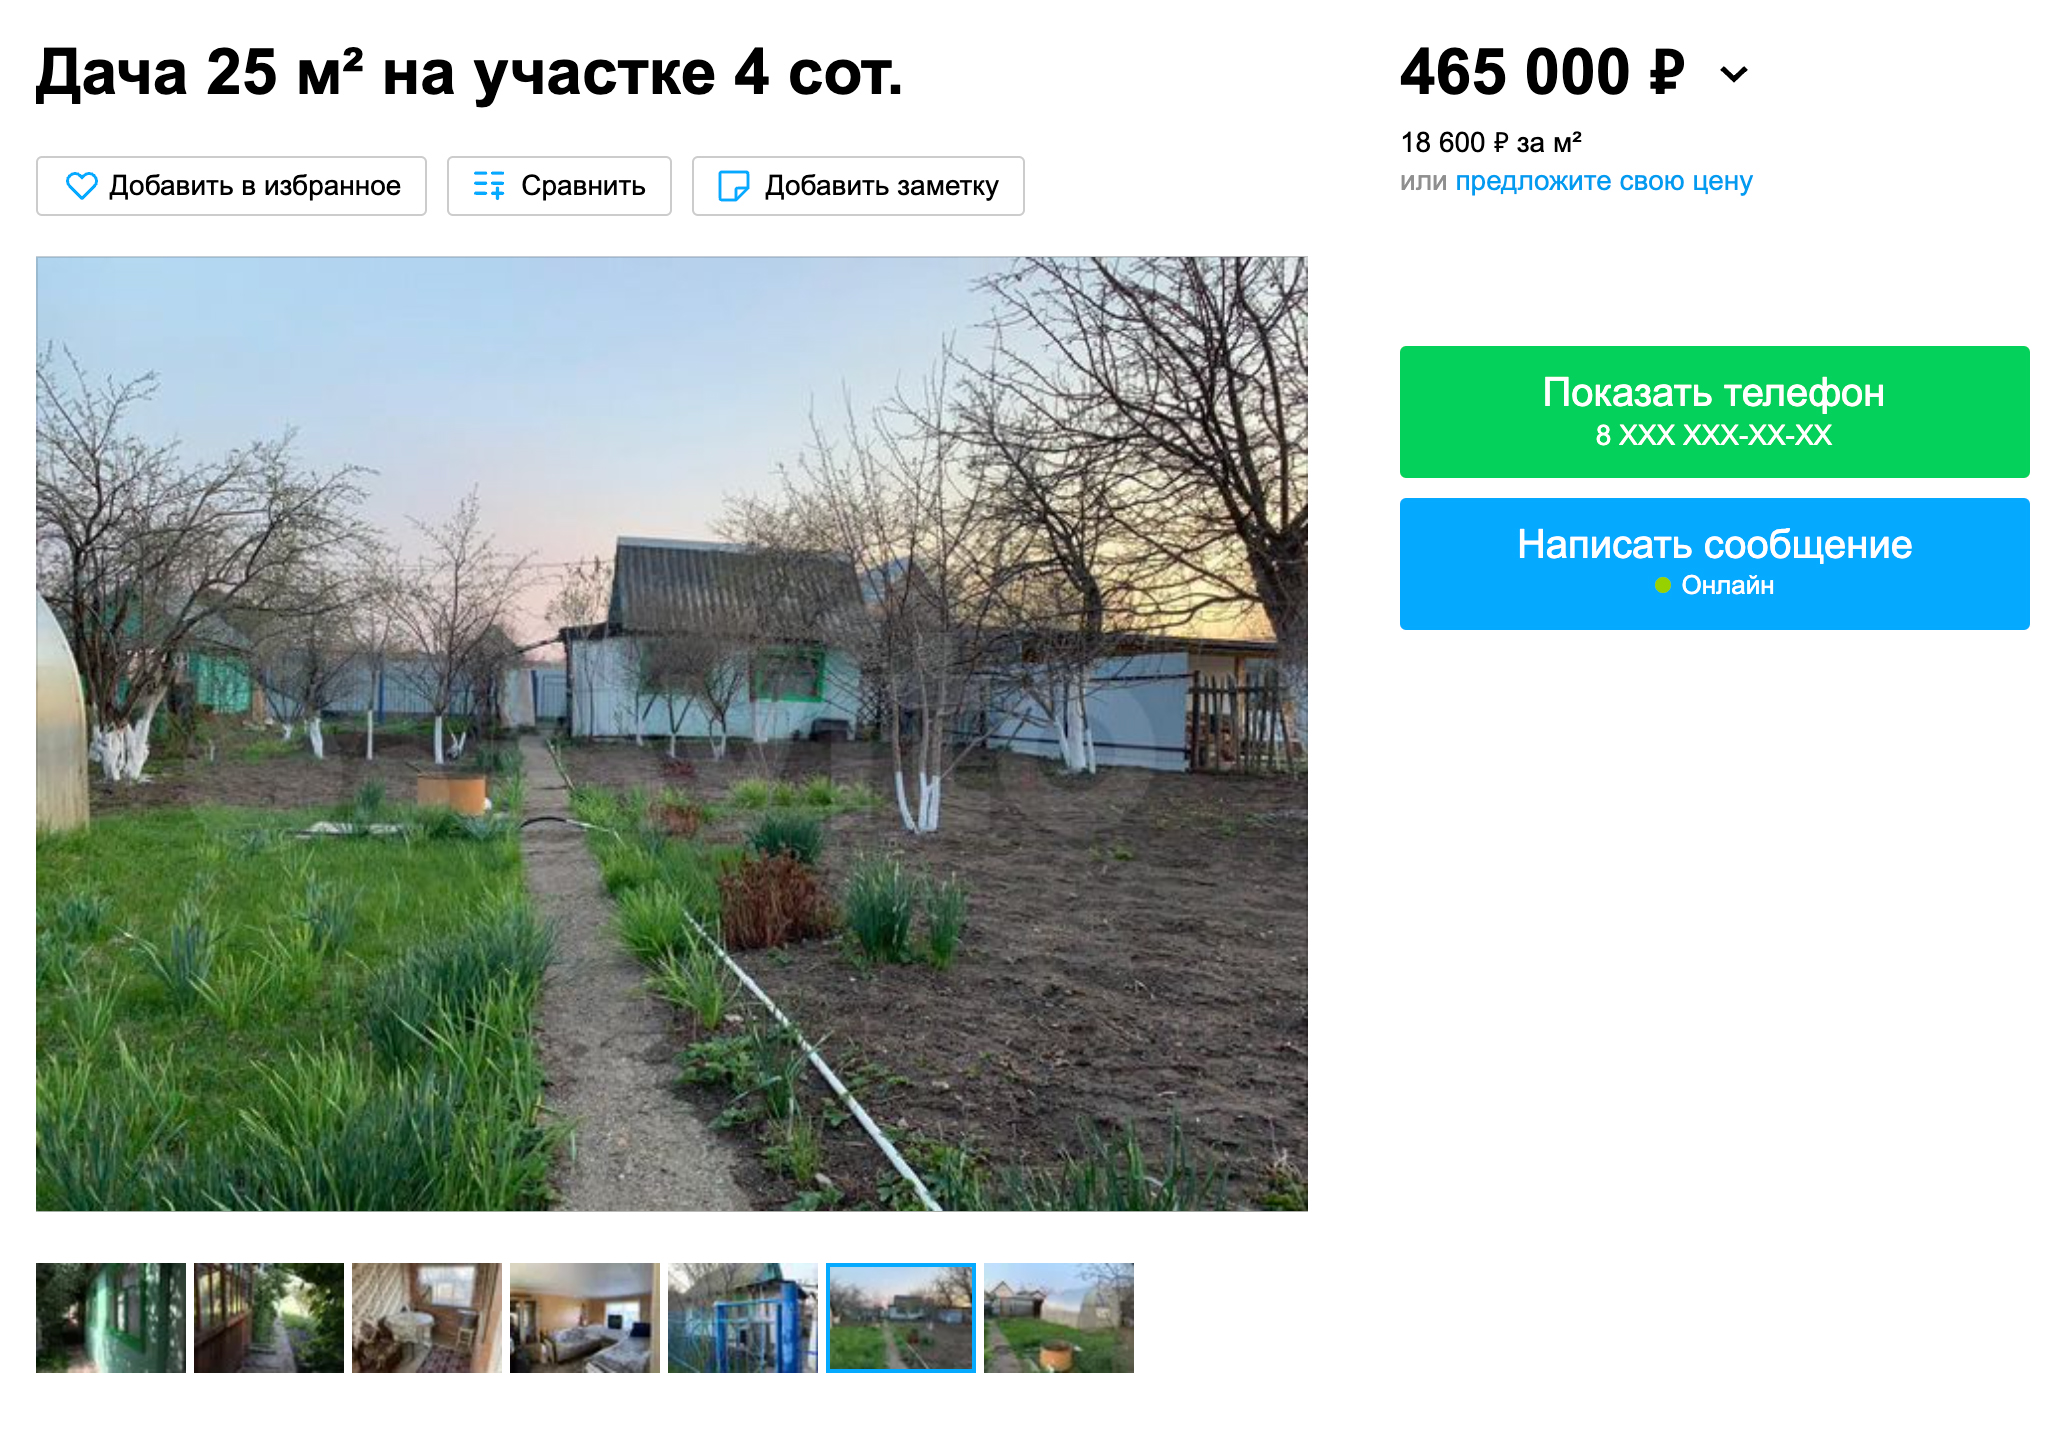 Вот пример ухоженного участка стоимостью 465 000 ₽. Площадь дома меньше, чем у нас, зато есть теплица и хозблок. Источник: avito.ru